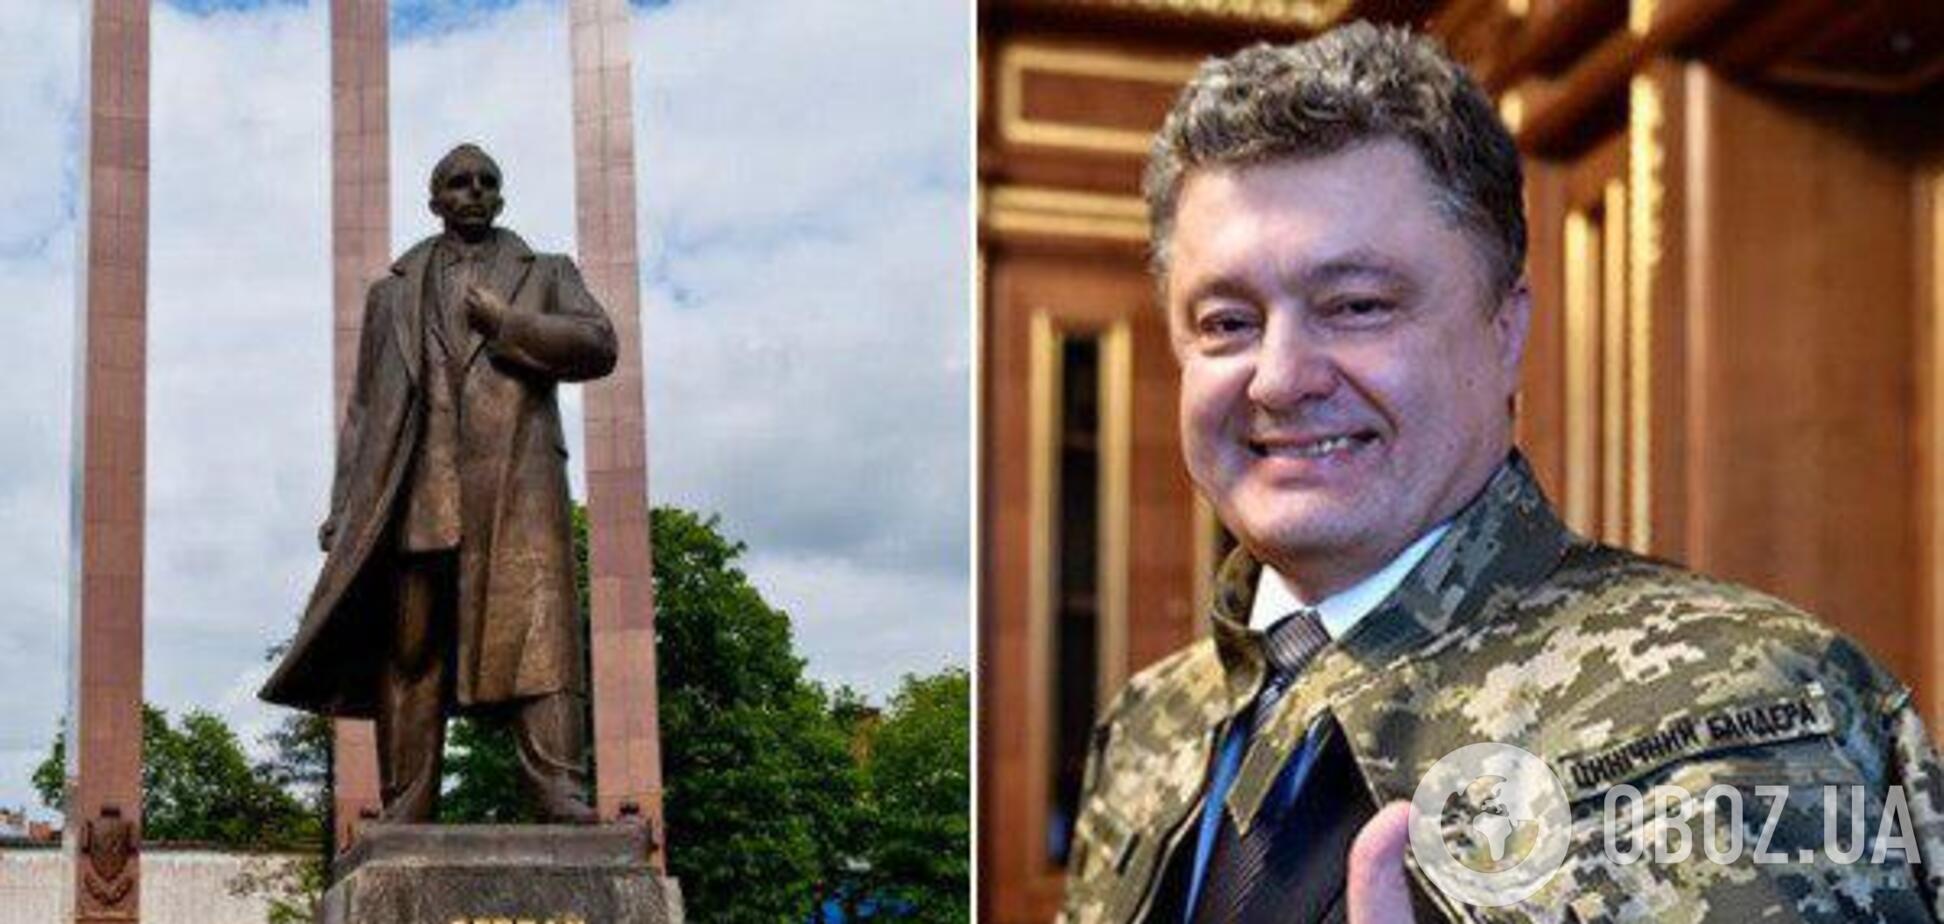 Результаты выборов: в каких регионах Украины победил Порошенко